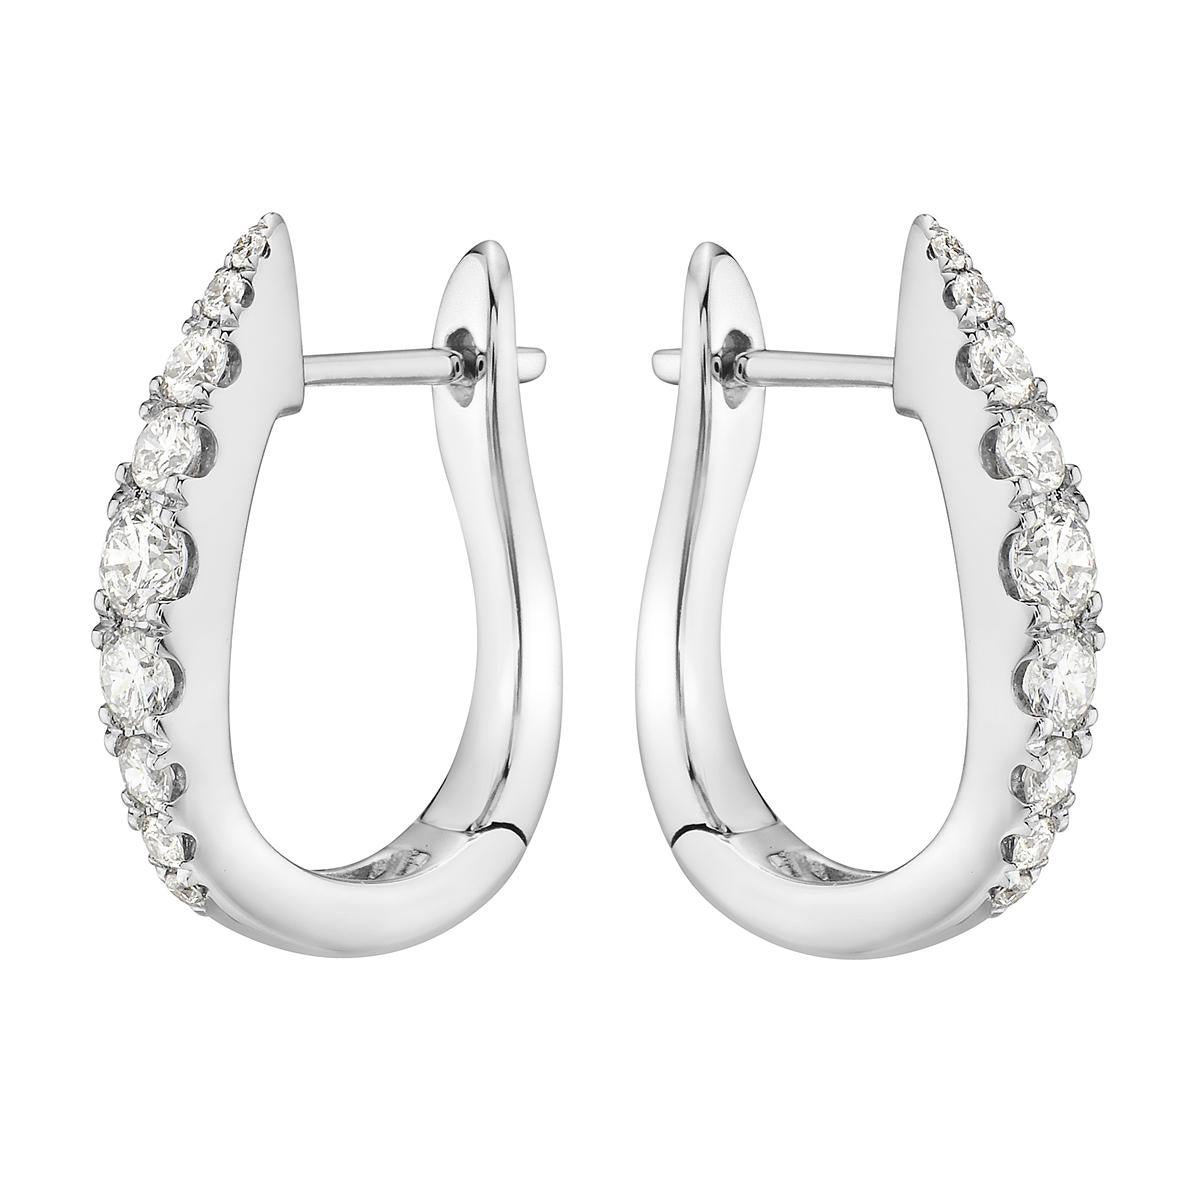 Avec ces exquises boucles d'oreilles blanches, le style et le glamour sont à l'honneur. Ces boucles d'oreilles 18 carats sont composées de 3,5 grammes d'or. Ces boucles d'oreilles sont ornées de diamants de couleur VS2, G, composés de 18 diamants